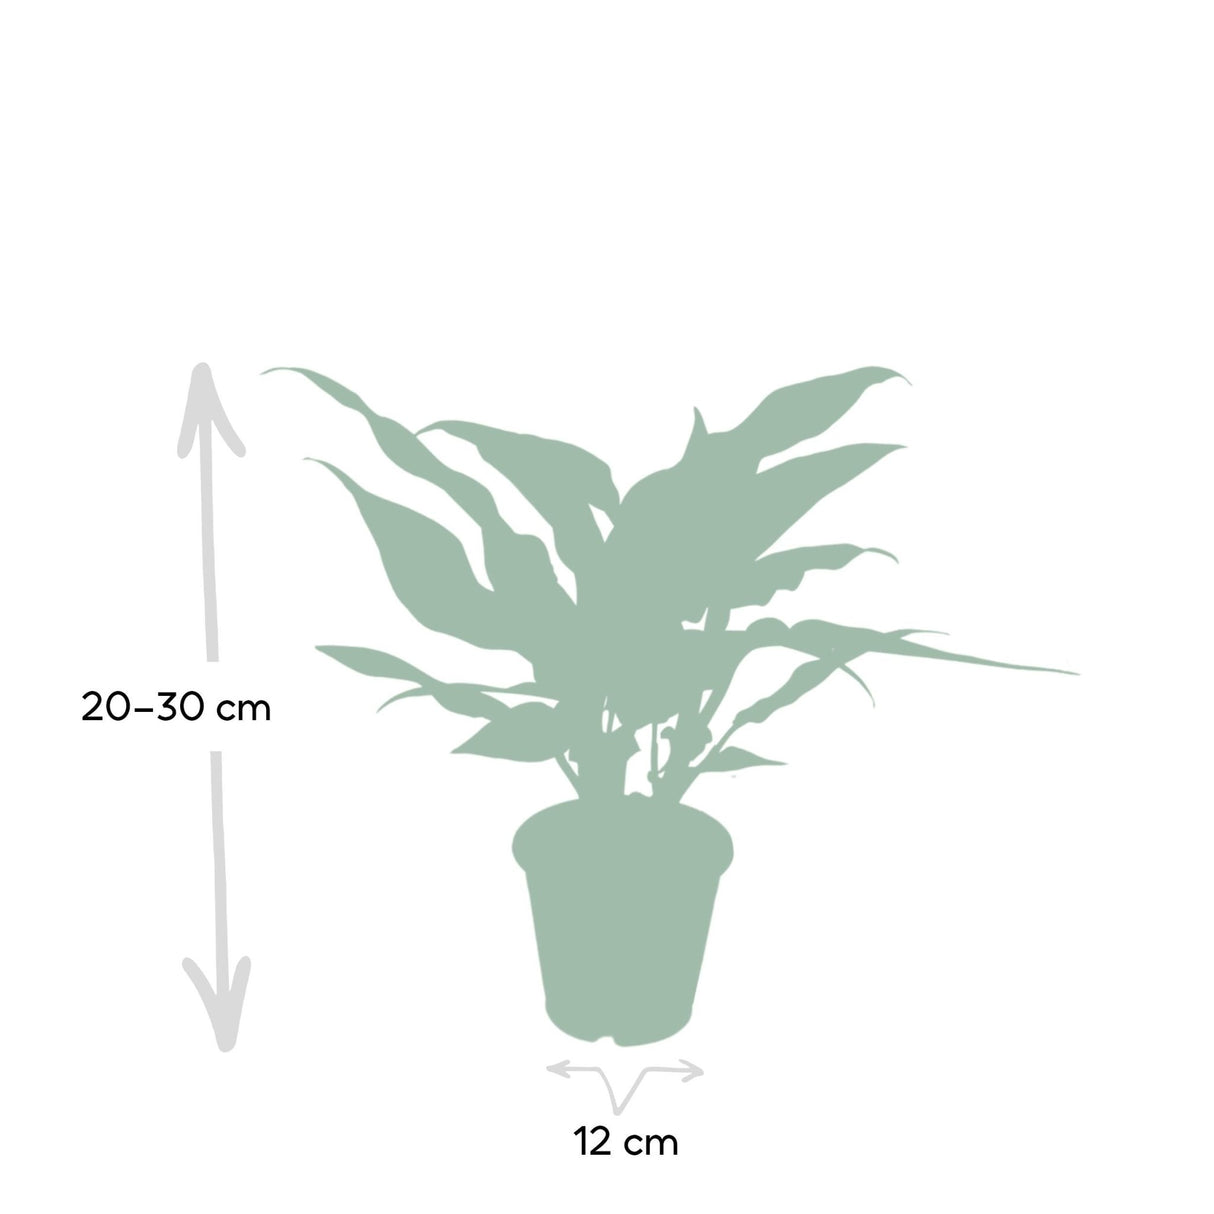 Livraison plante - Aglaonema Maria - h30cm, Ø12cm - plante d'intérieur